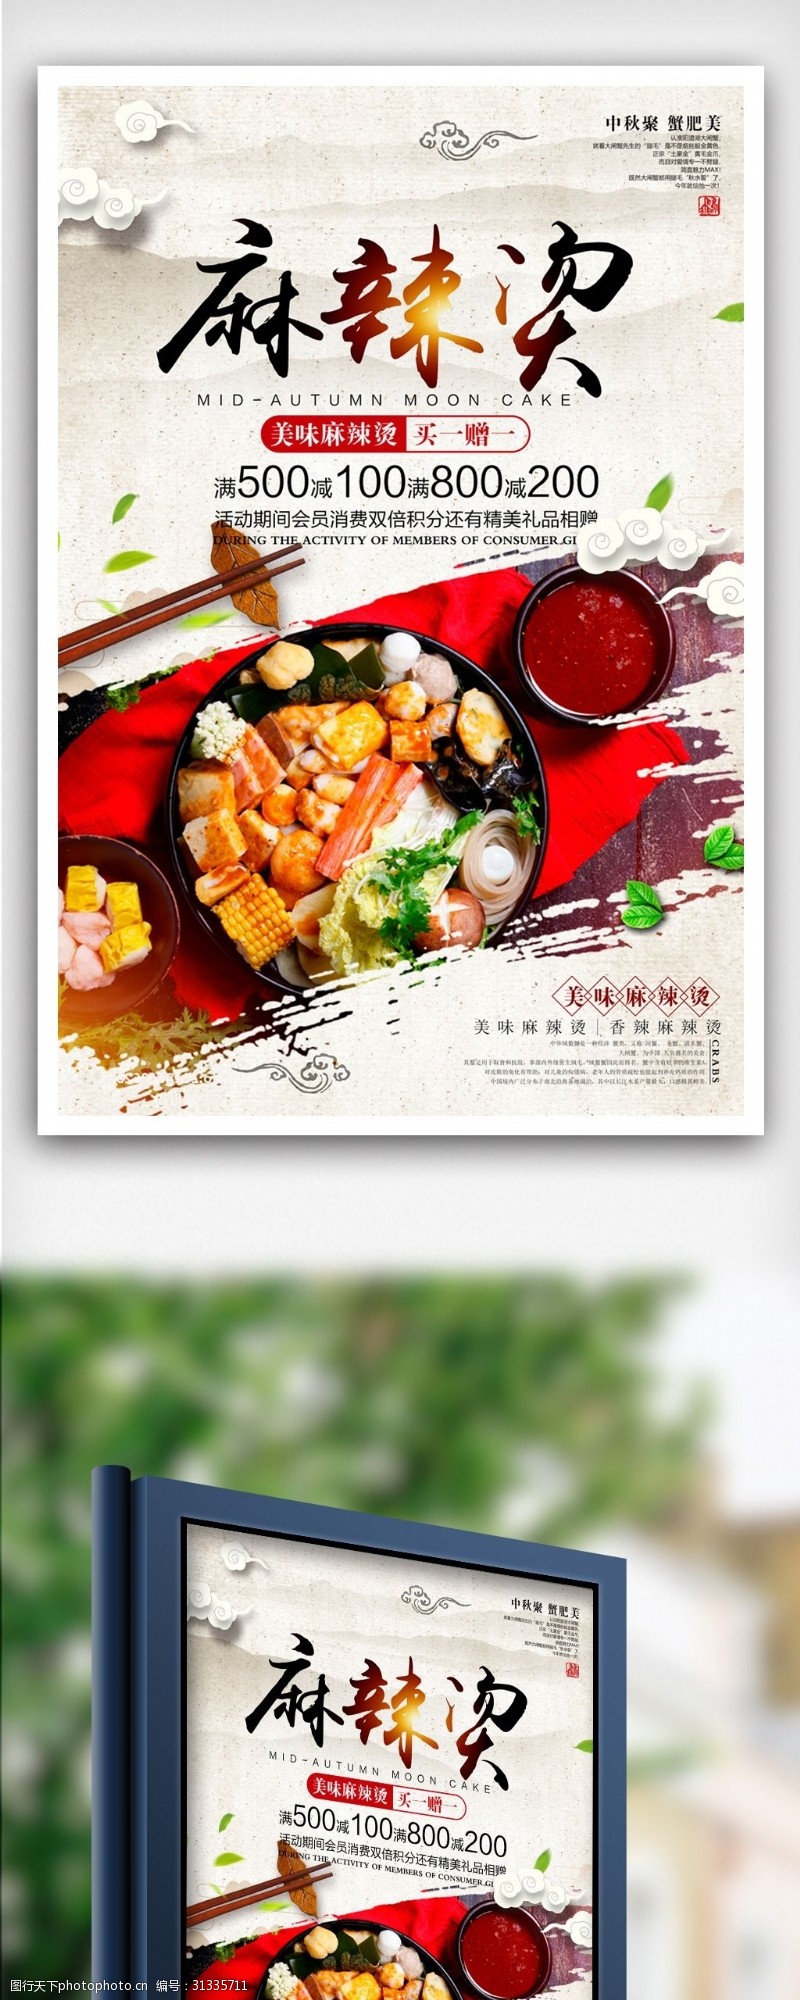 饭店菜谱中国风美味麻辣烫美食海报设计